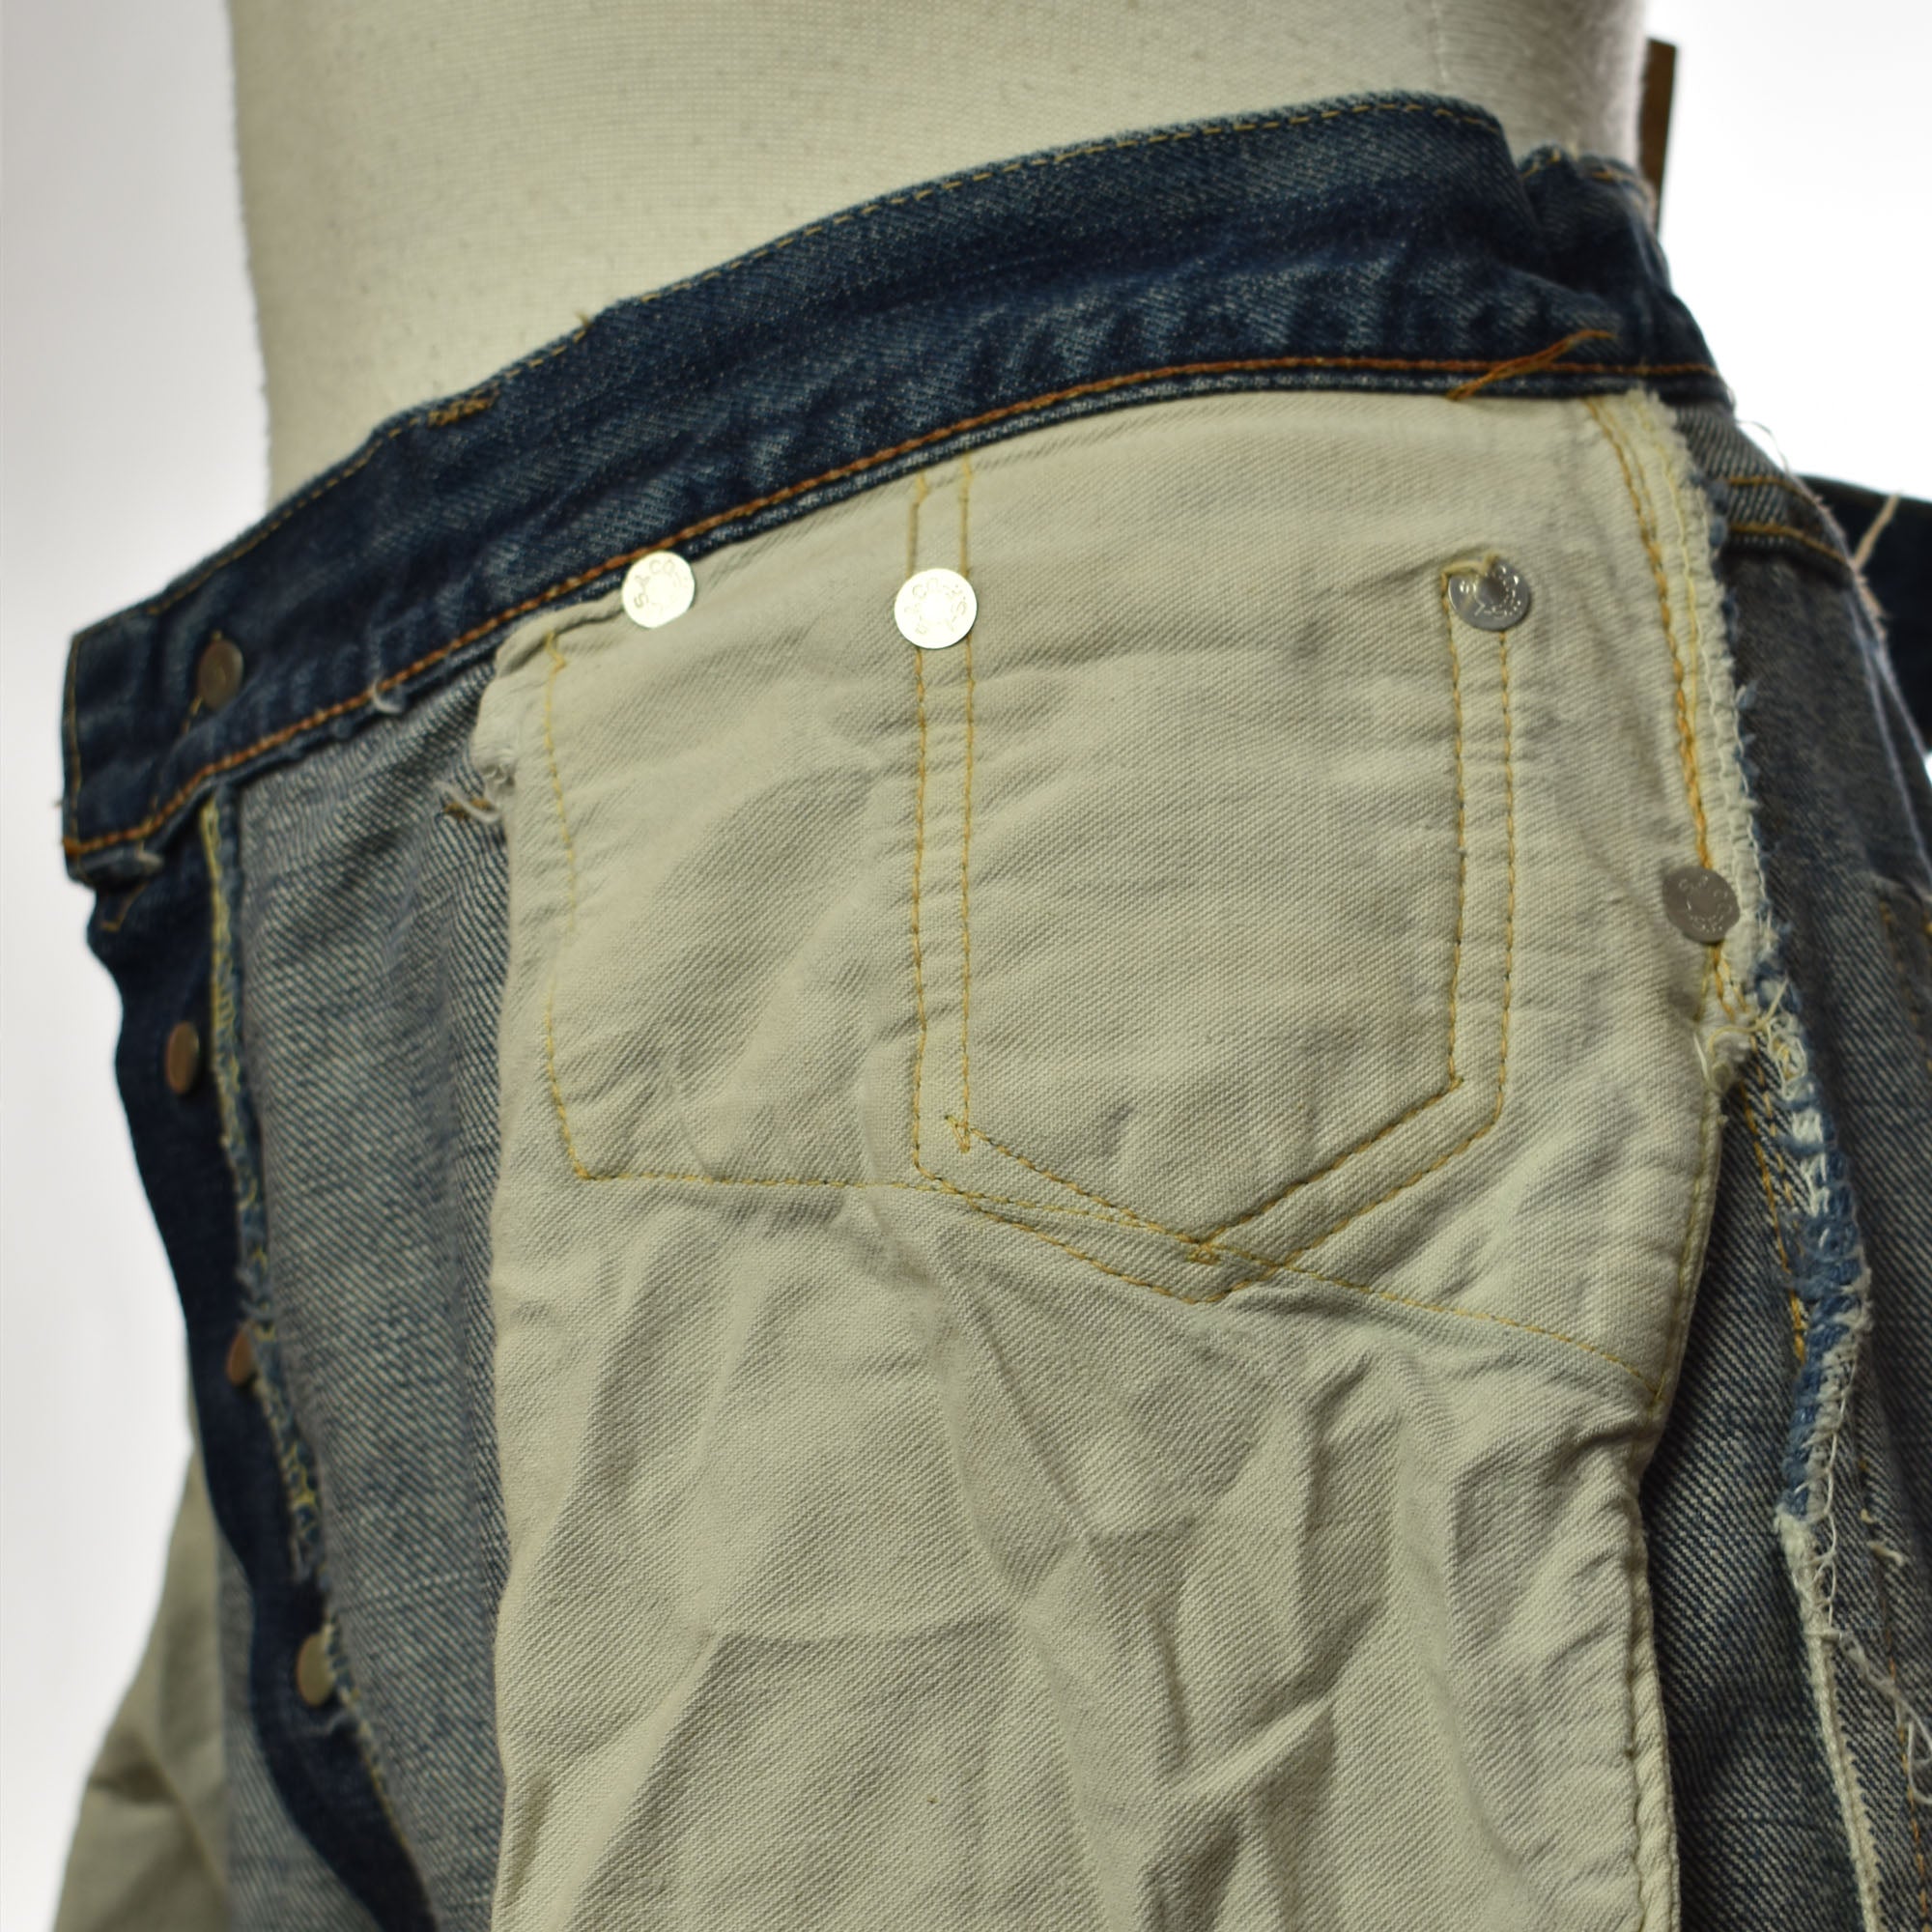 Vintage 60s Levis 501 Big E Redline Selvedge Jeans – The Only Vintage